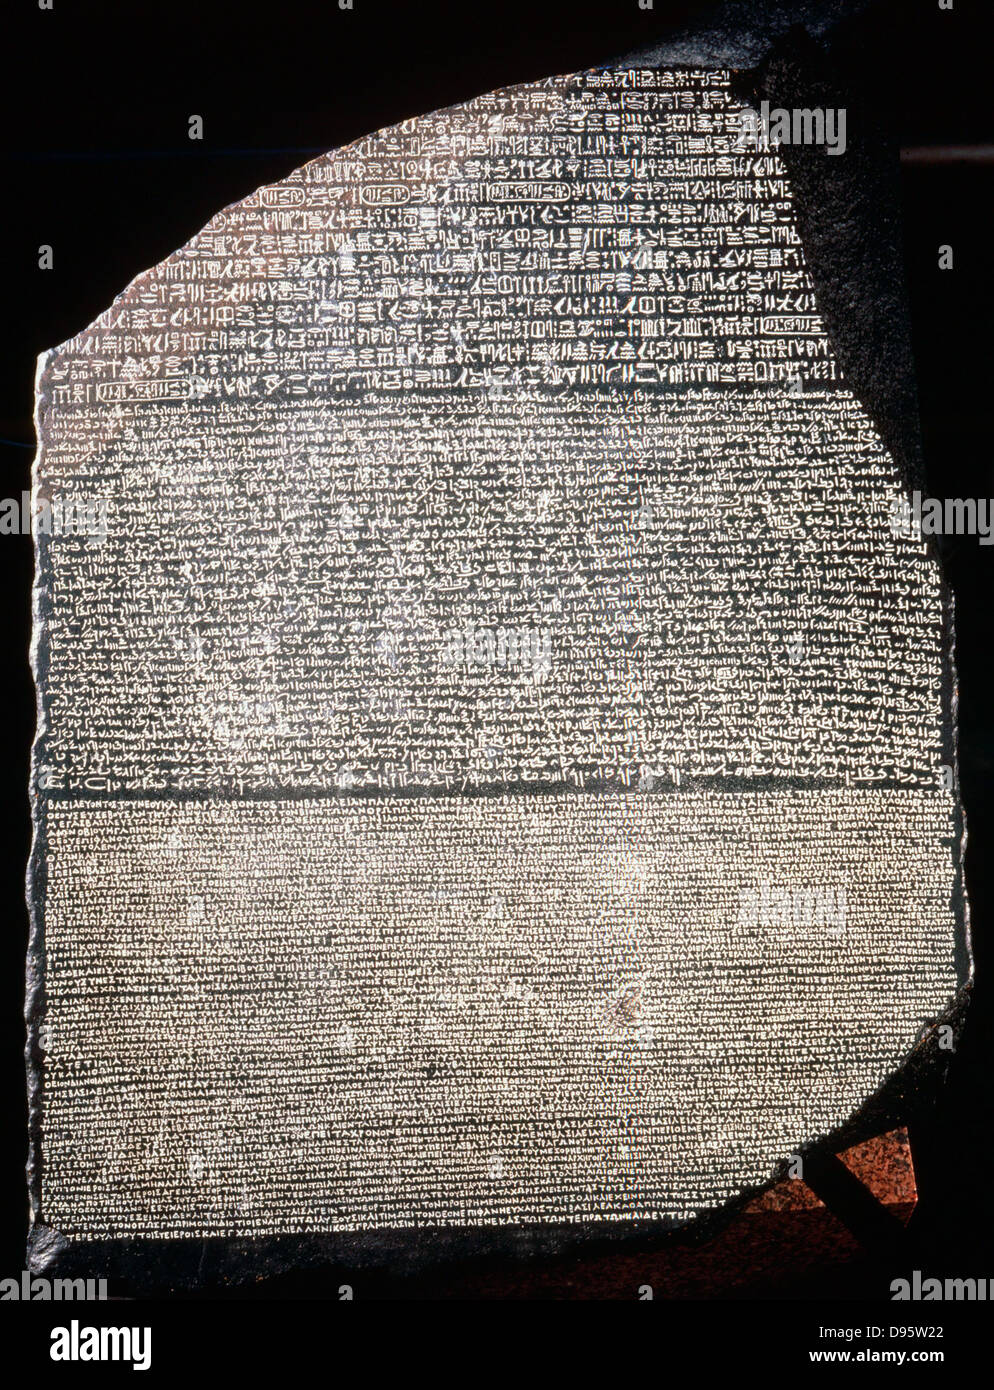 Rosetta Stone: lastra di basalto inscritto con decreto del faraone Tolomeo Epiphanes (205-180 a.C.) in tre lingue, greco, geroglifica e Demotic script. Scoperto vicino a rosetta in Egitto nel 1799, divenne la chiave per decifrare le iscrizioni egiziano Museo Britannico Foto Stock